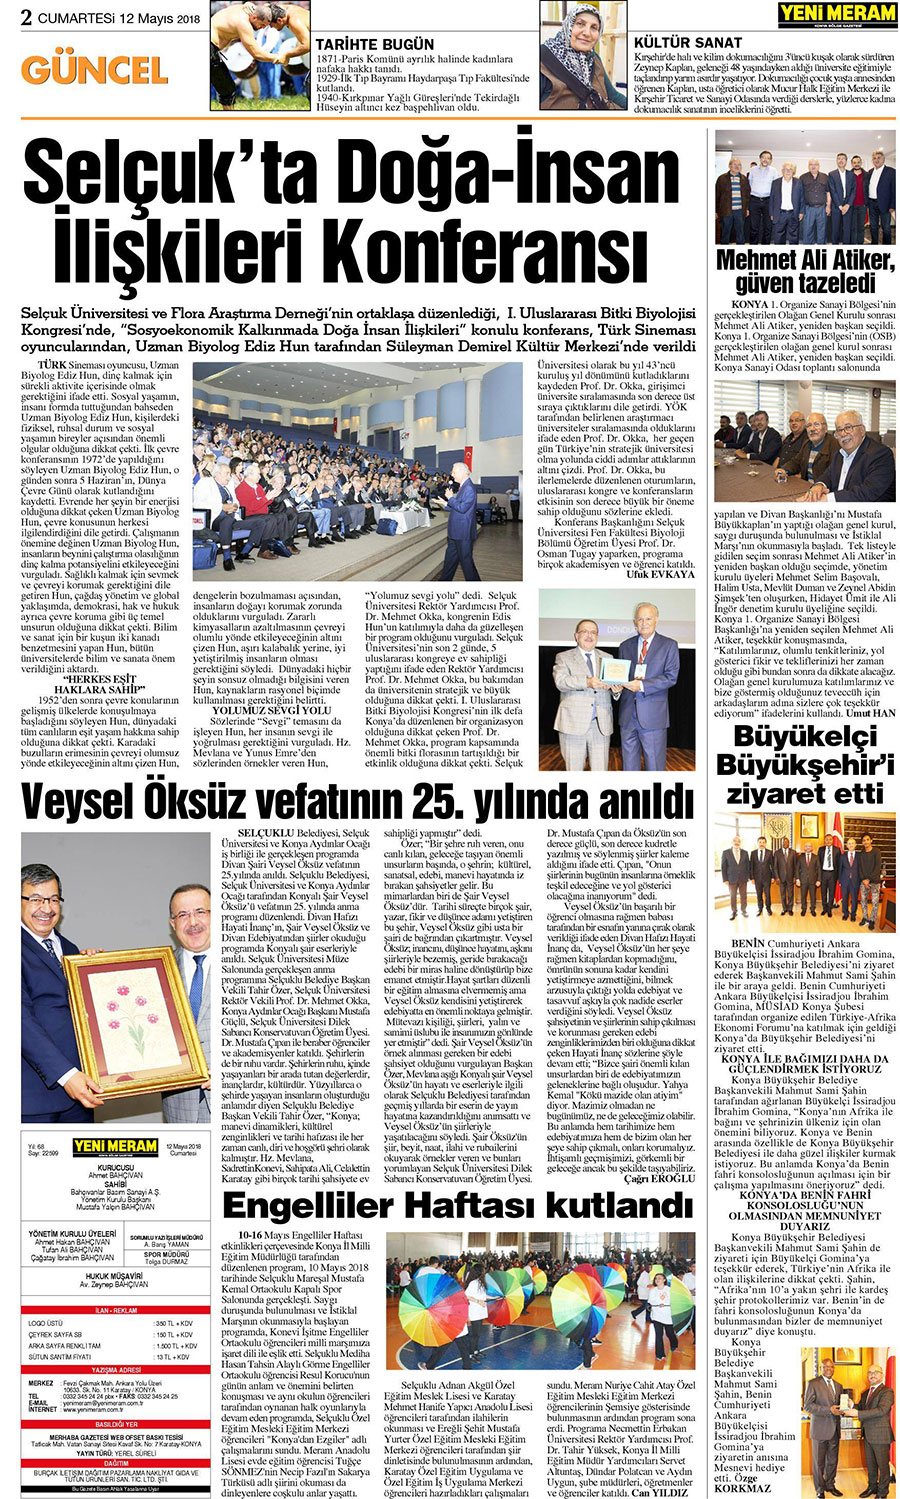 12 Mayıs 2018 Yeni Meram Gazetesi